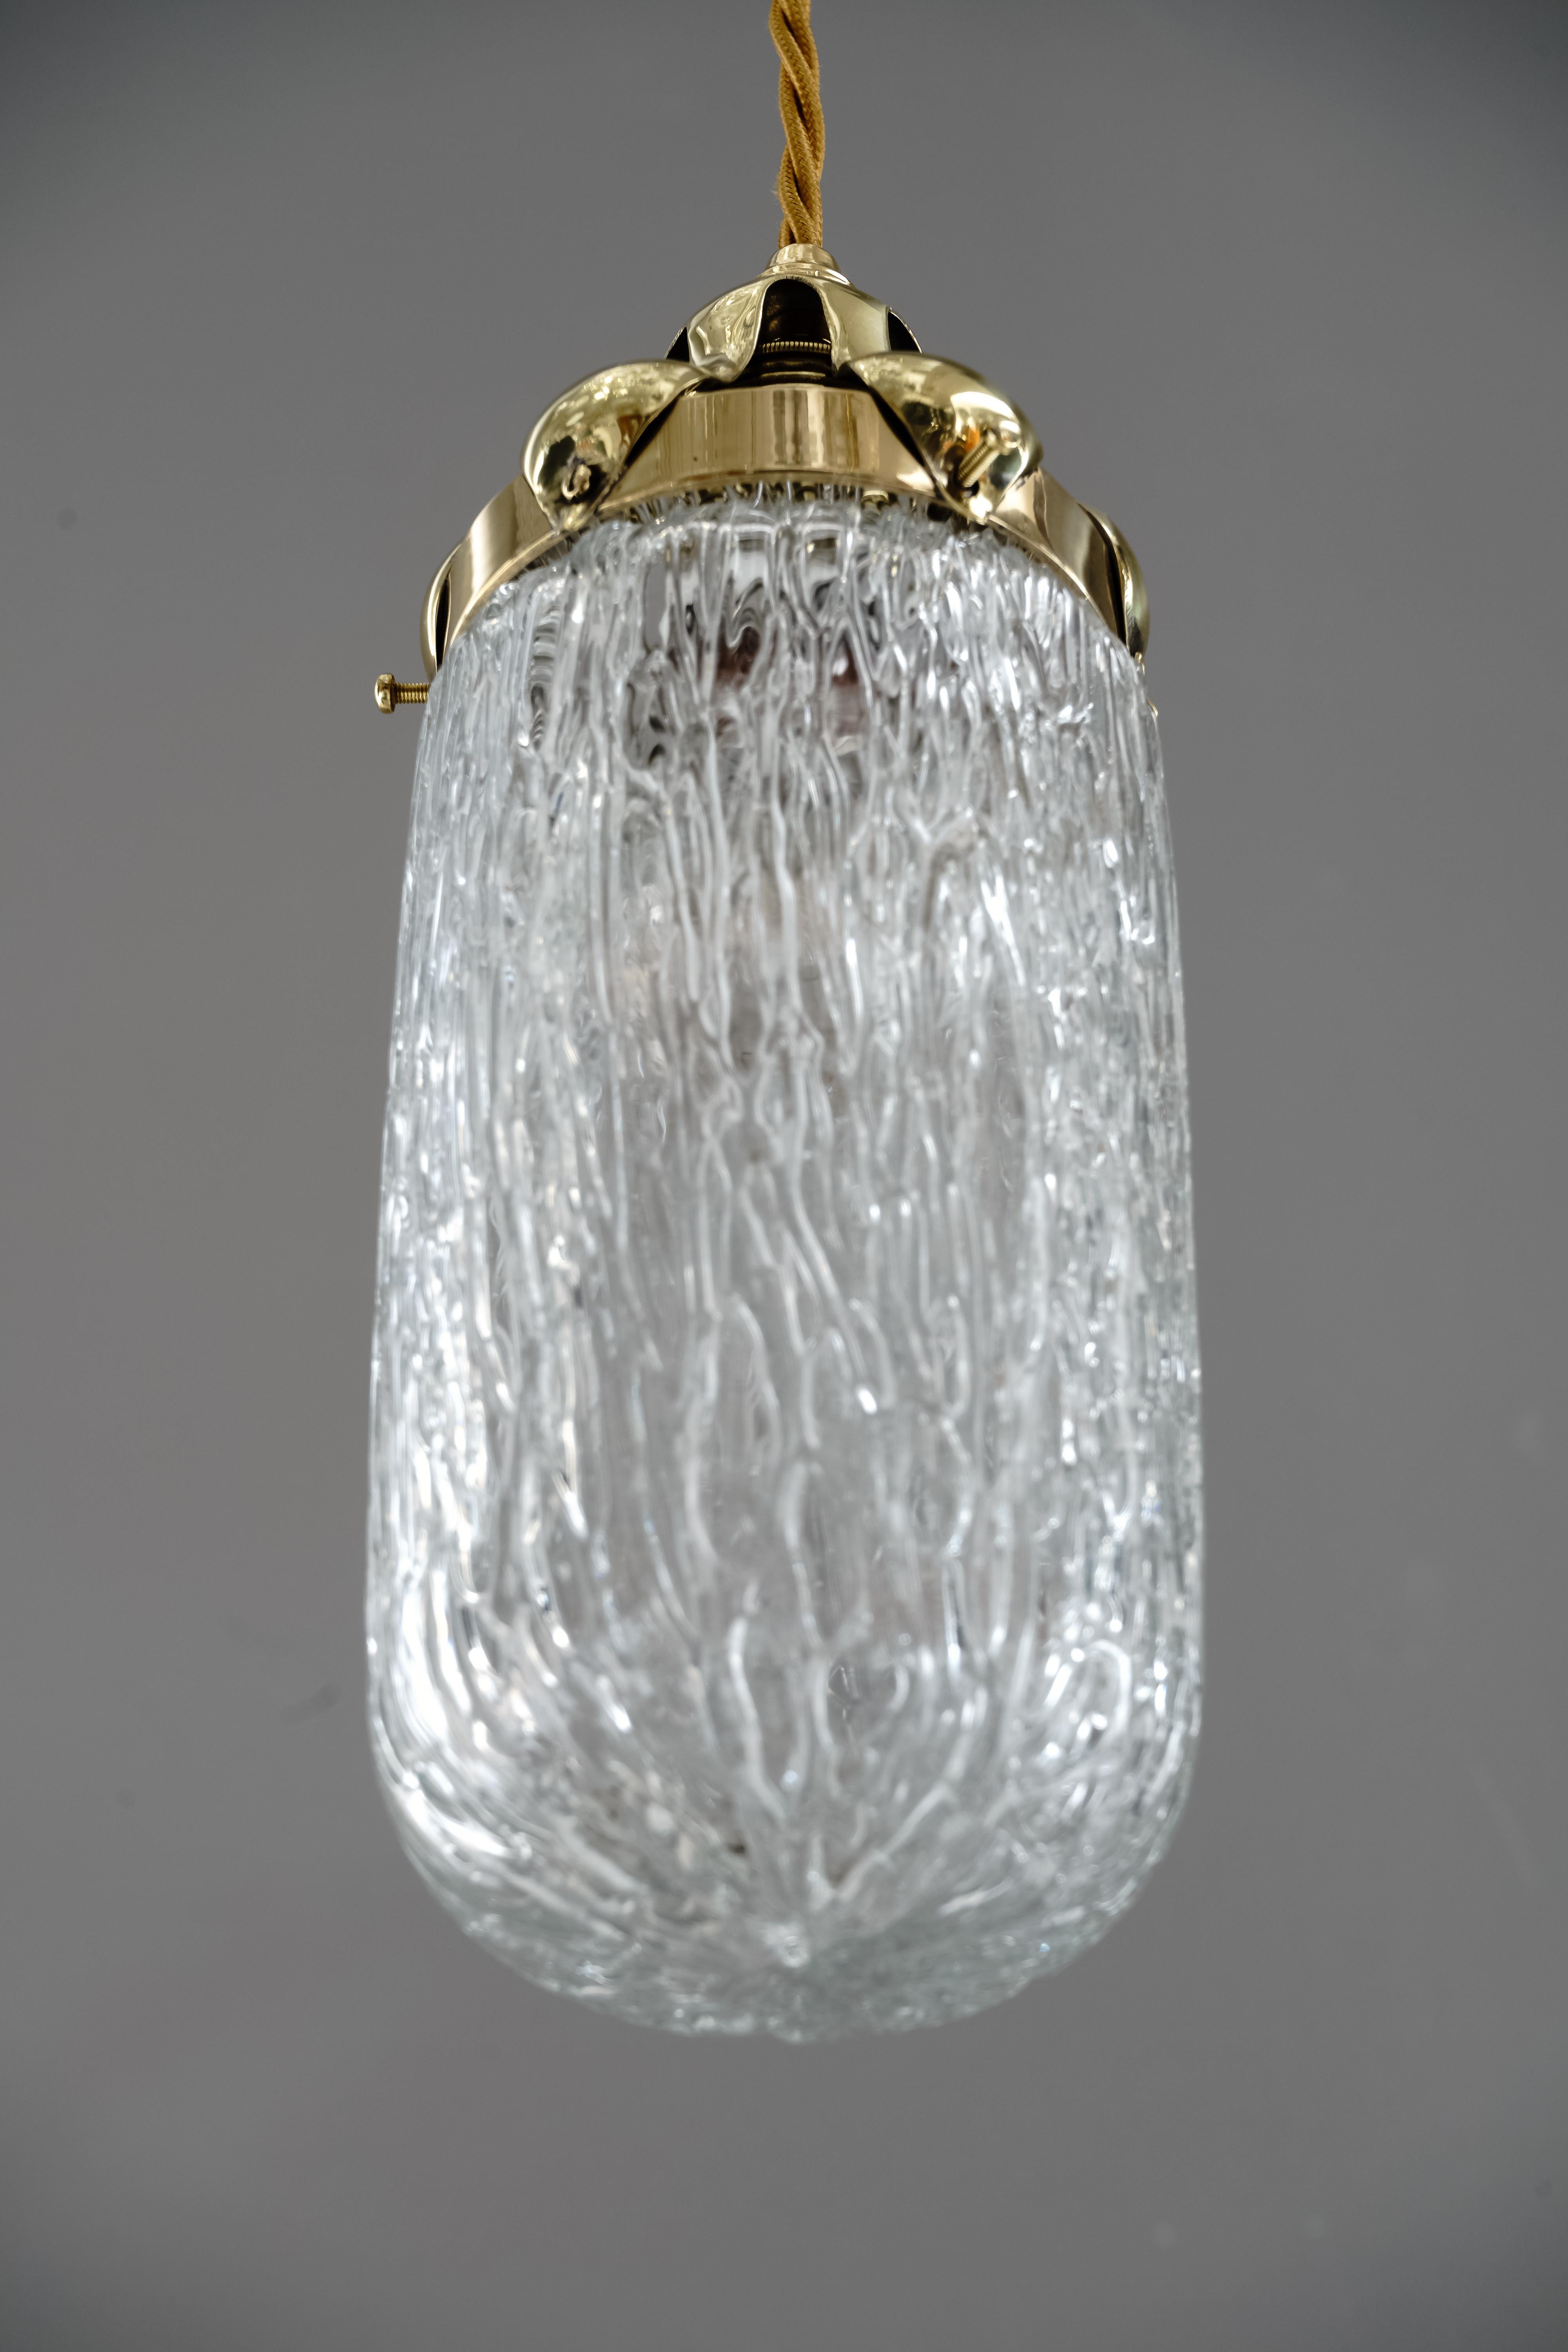 Jugendstil Leopold Bauer Hanging Lamp with Loetz Witwe “Blitzglas” Shade, circa 1905 For Sale